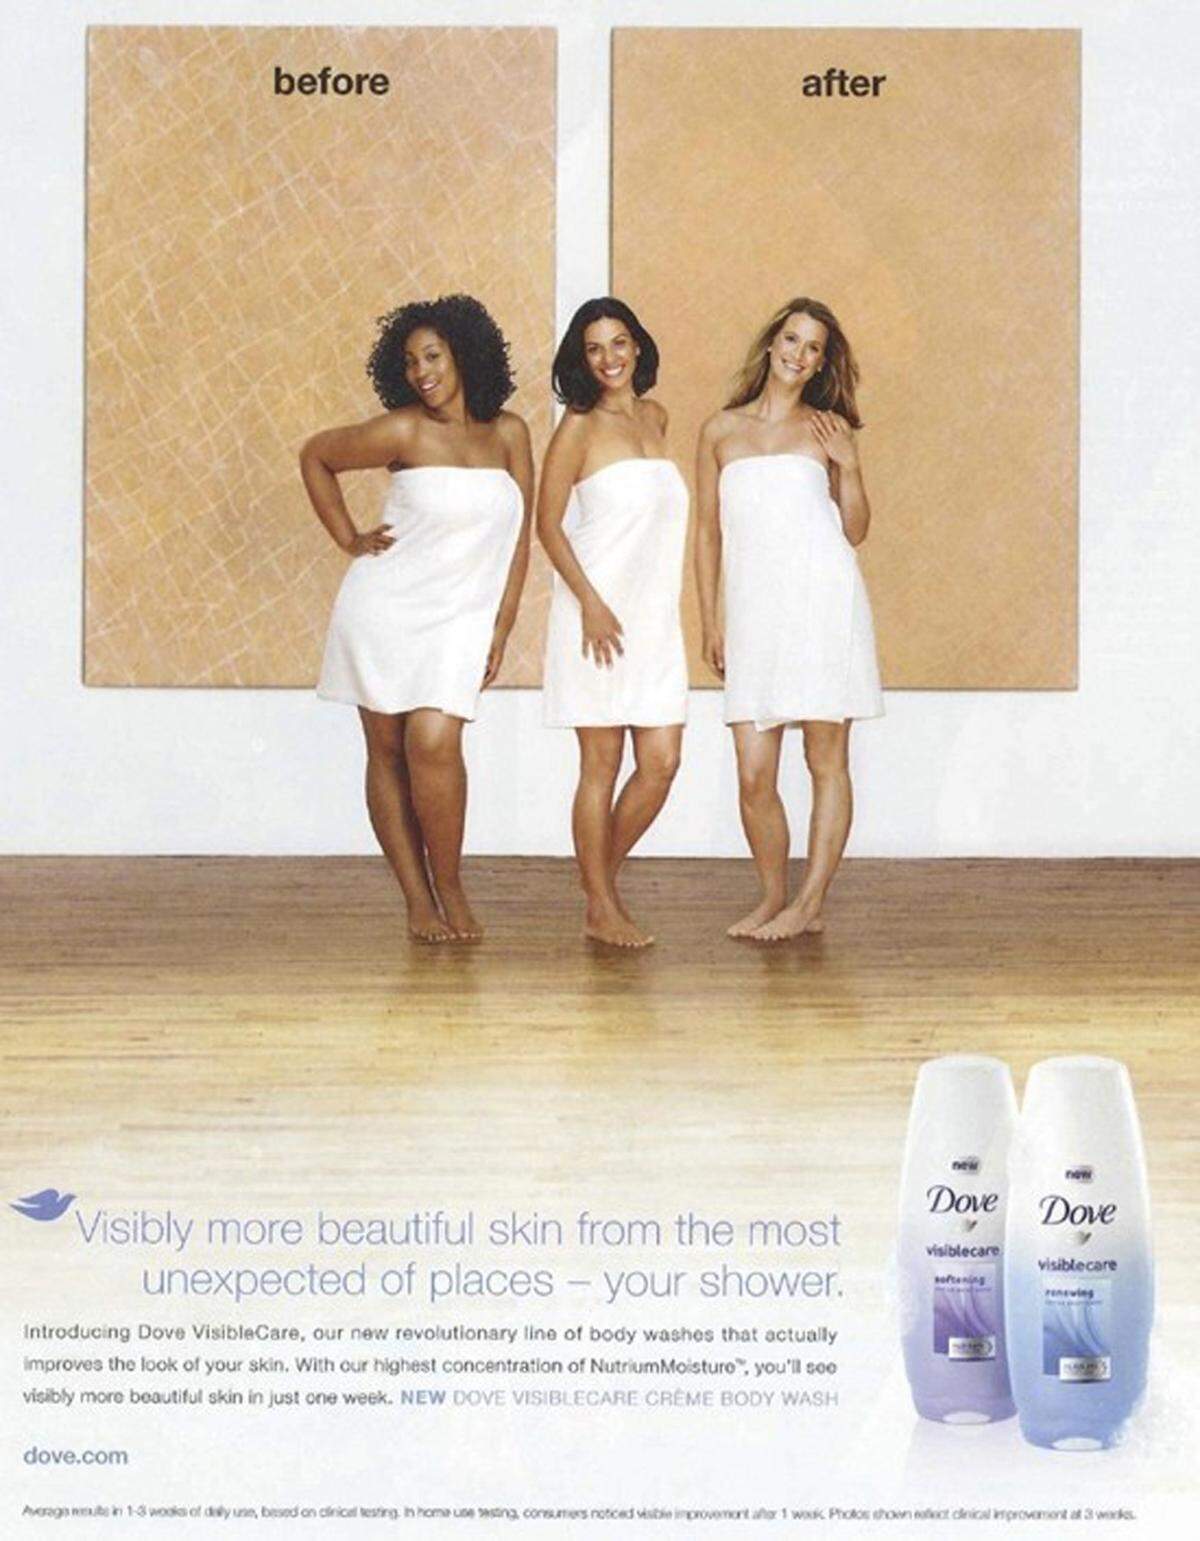 Auch bei Beauty-Werbungen kommt der rassistische Vorwurf immer wieder auf. So wie in dieser Werbung von Dove. Drei Frauen unterschiedlicher Hautfarbe stehen dabei nebeneinander. Kritiker sagen, dass hier der Eindruck erweckt wird, dass man mit Dove Schritt für Schritt einen helleren Hautton bekommt.